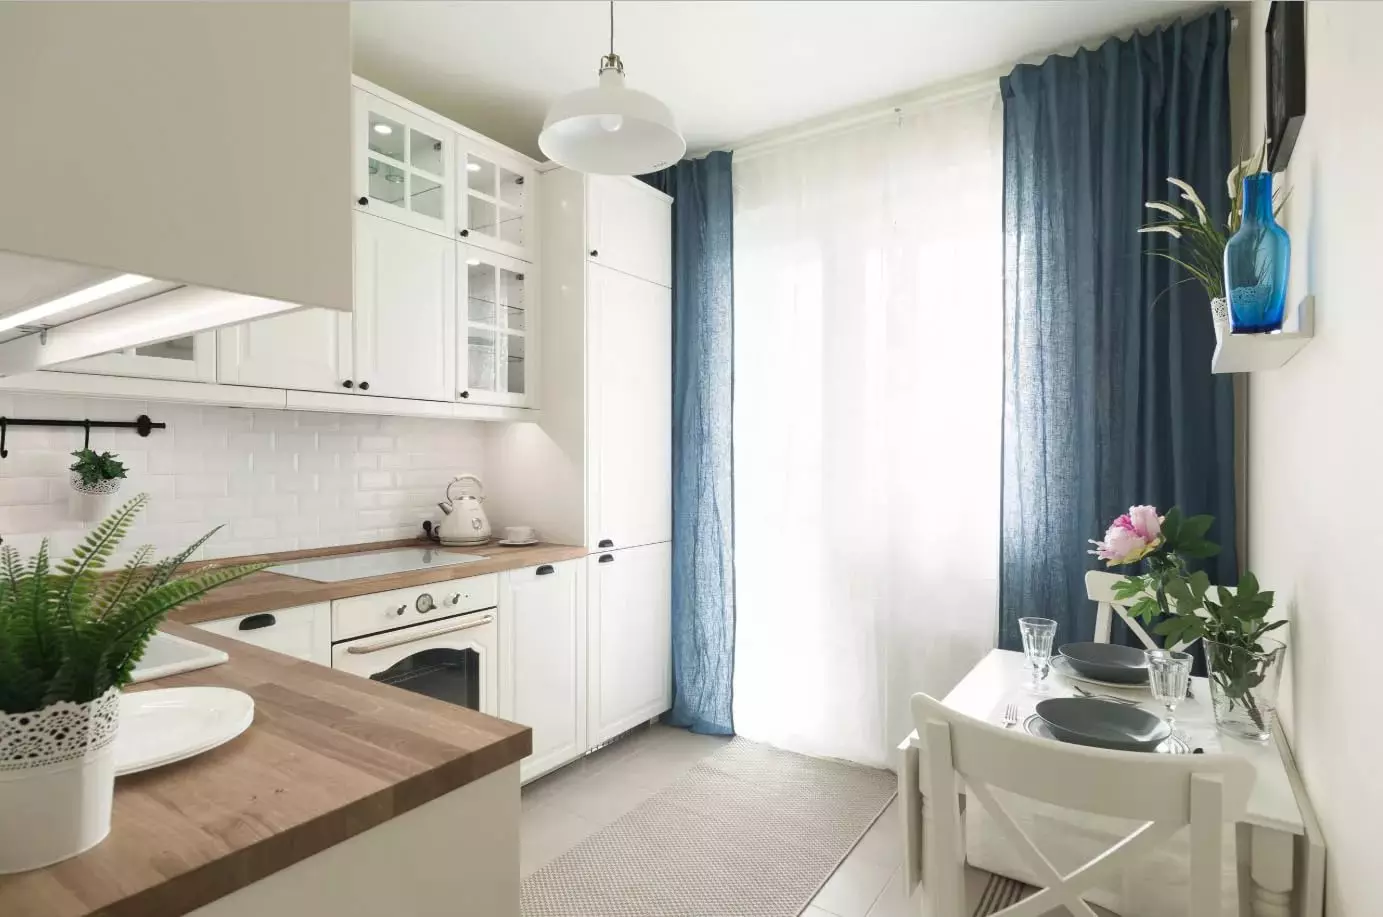 Cortinas para cozinha branca (42 fotos): Que cores são adequadas para design de cozinha em cores preto e branco? Como as cortinas azuis olham no interior da cozinha branca? 20975_38